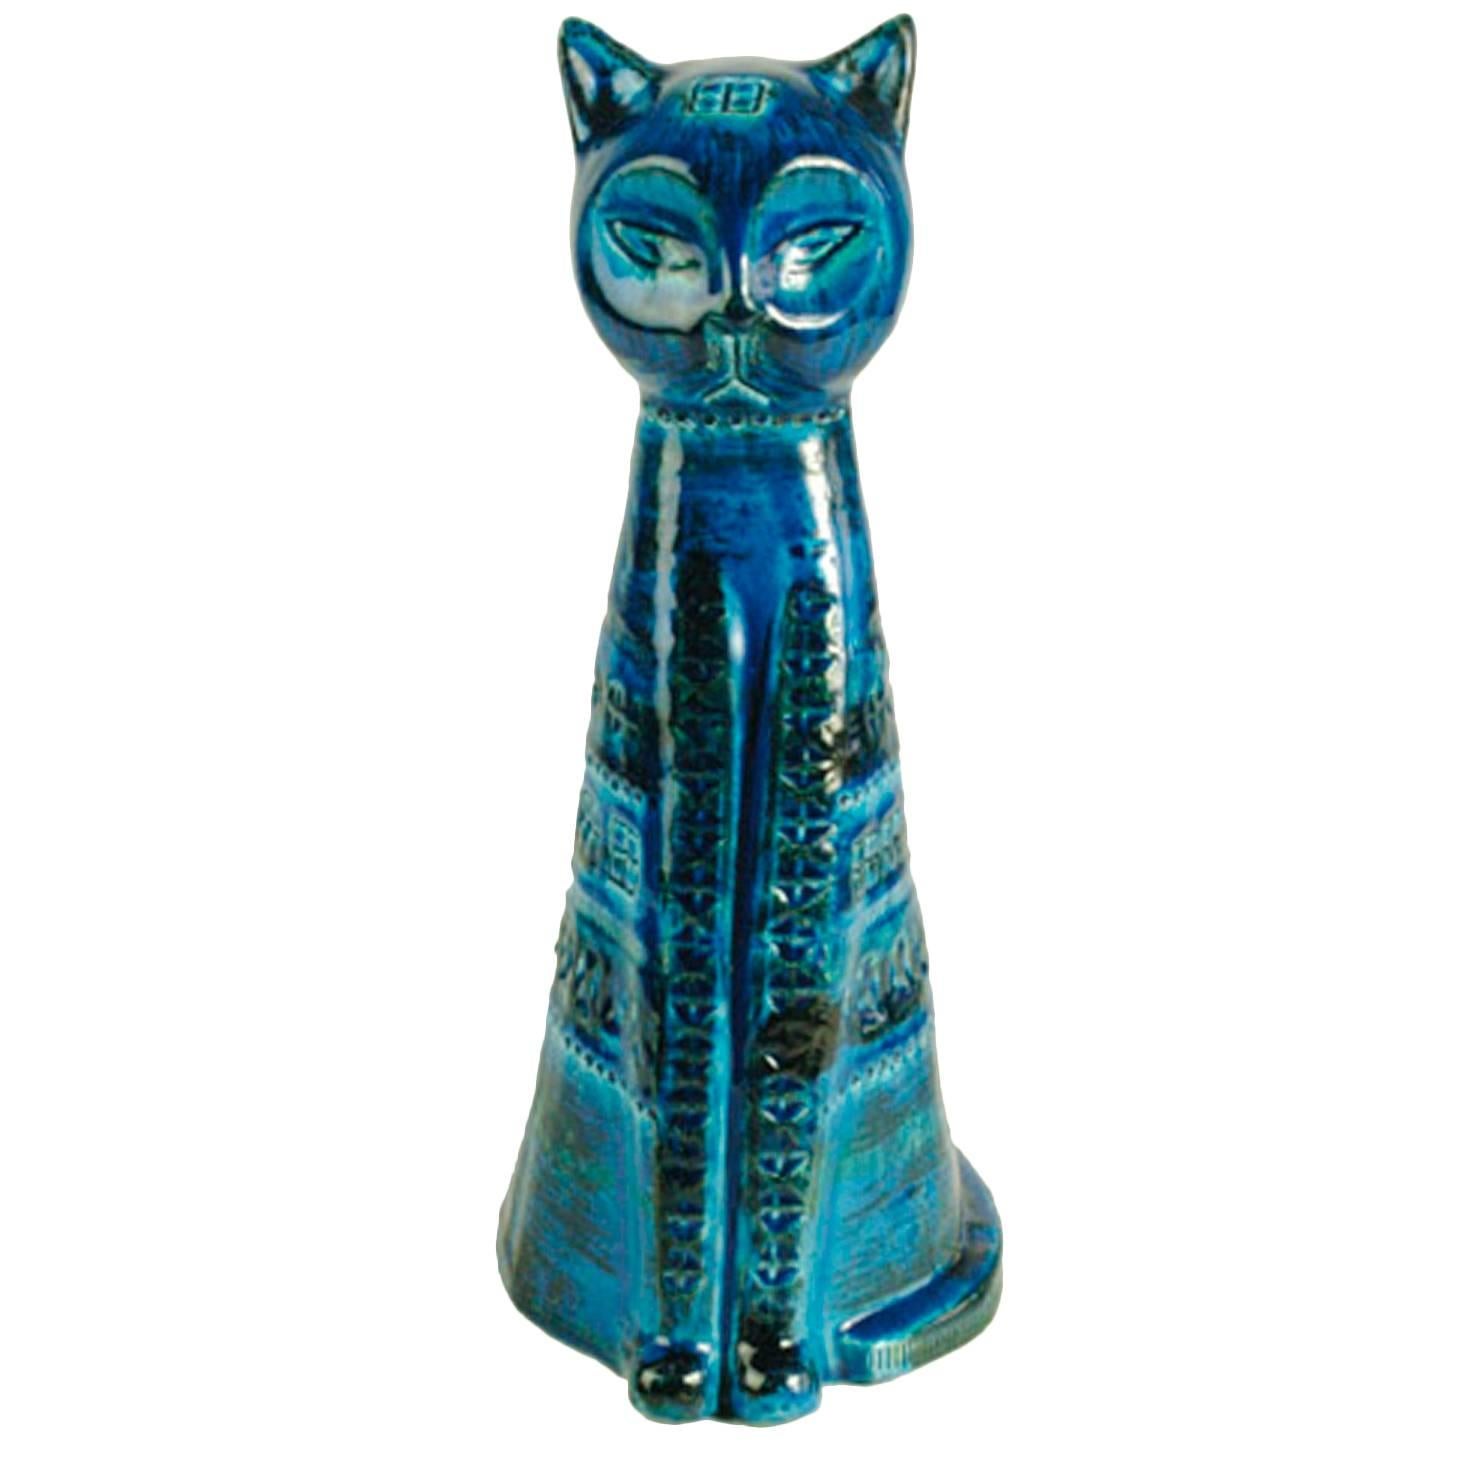 Italian 1960s "Rimini Blu" Ceramic Cat by Aldo Londi